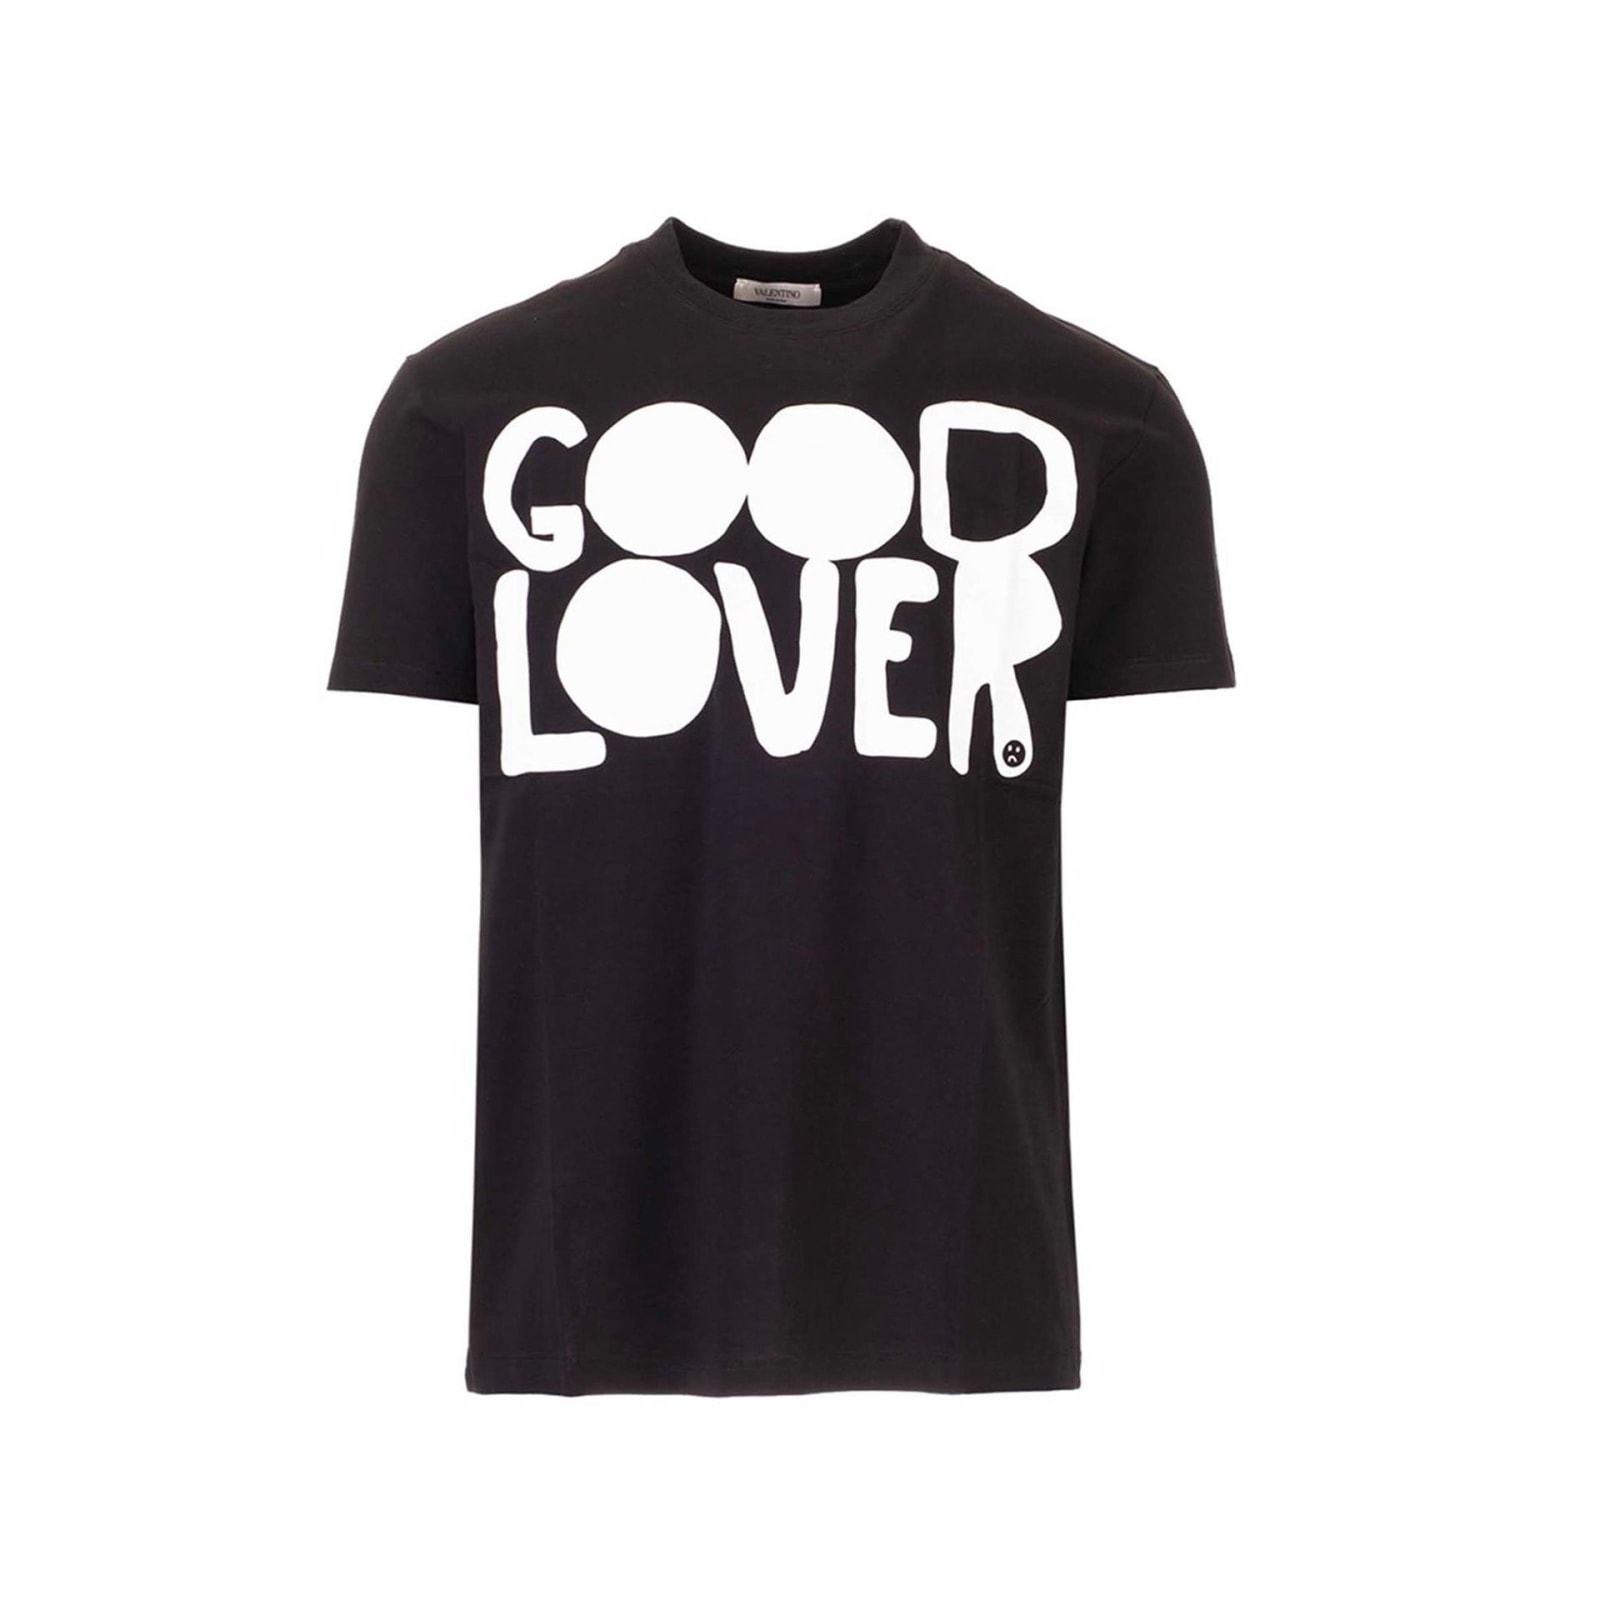 Good Lover T-shirt